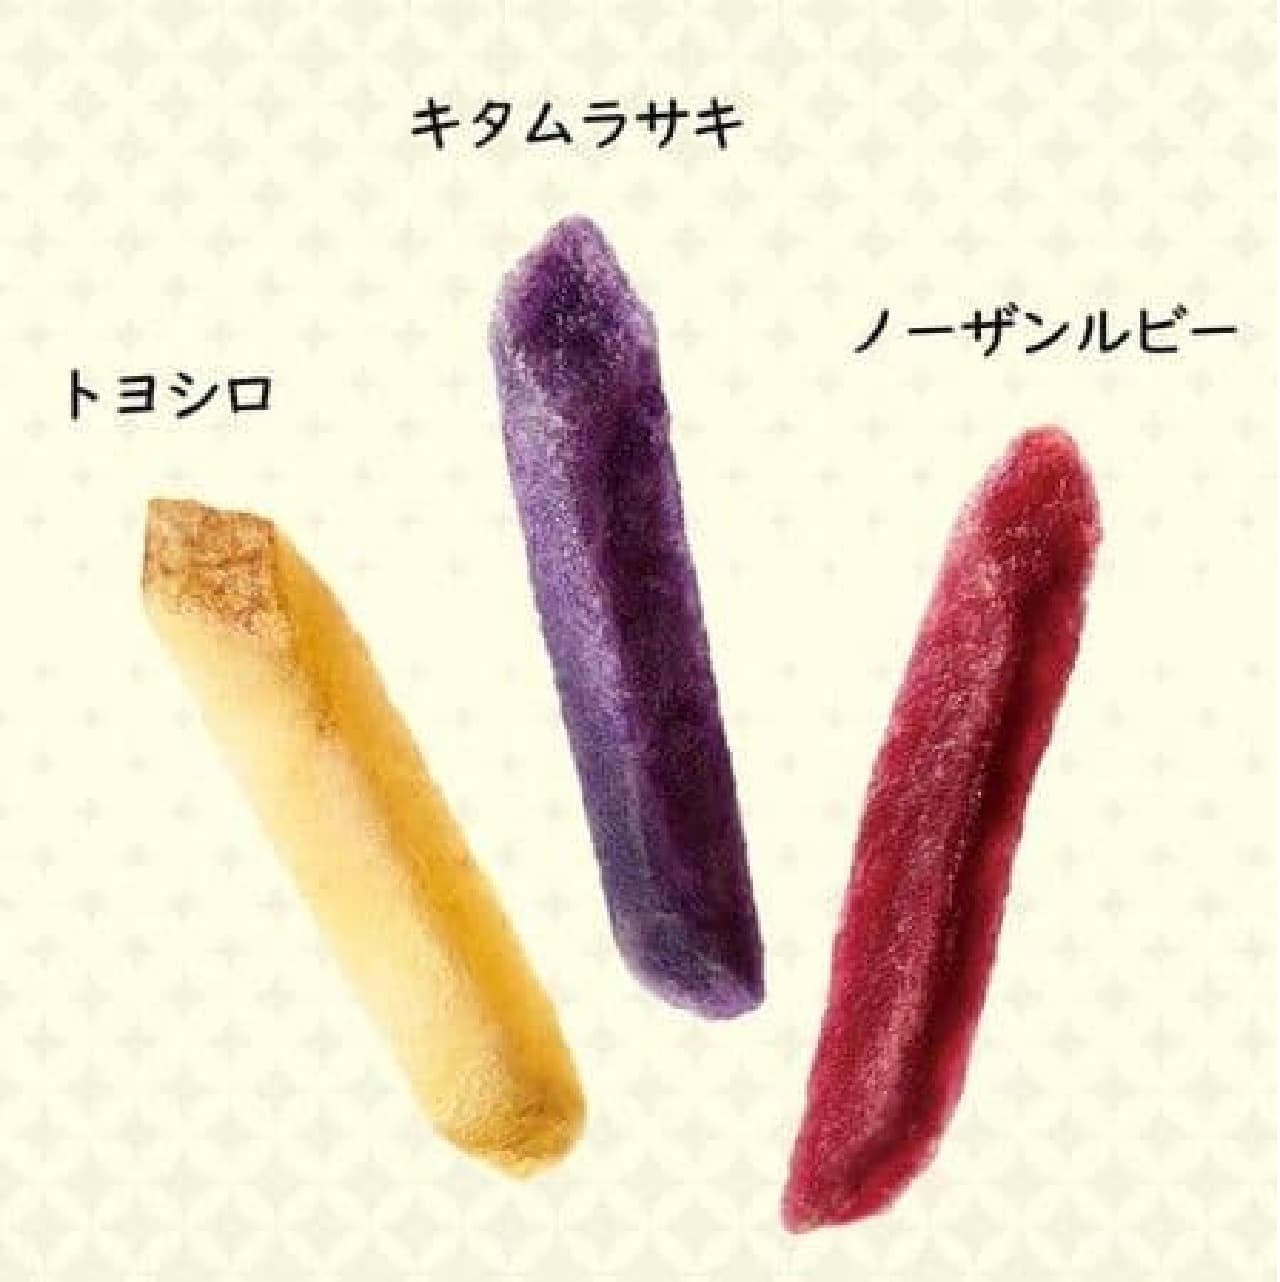 Calbee "Reward Jagabee 3 kinds of colorful umami taste"